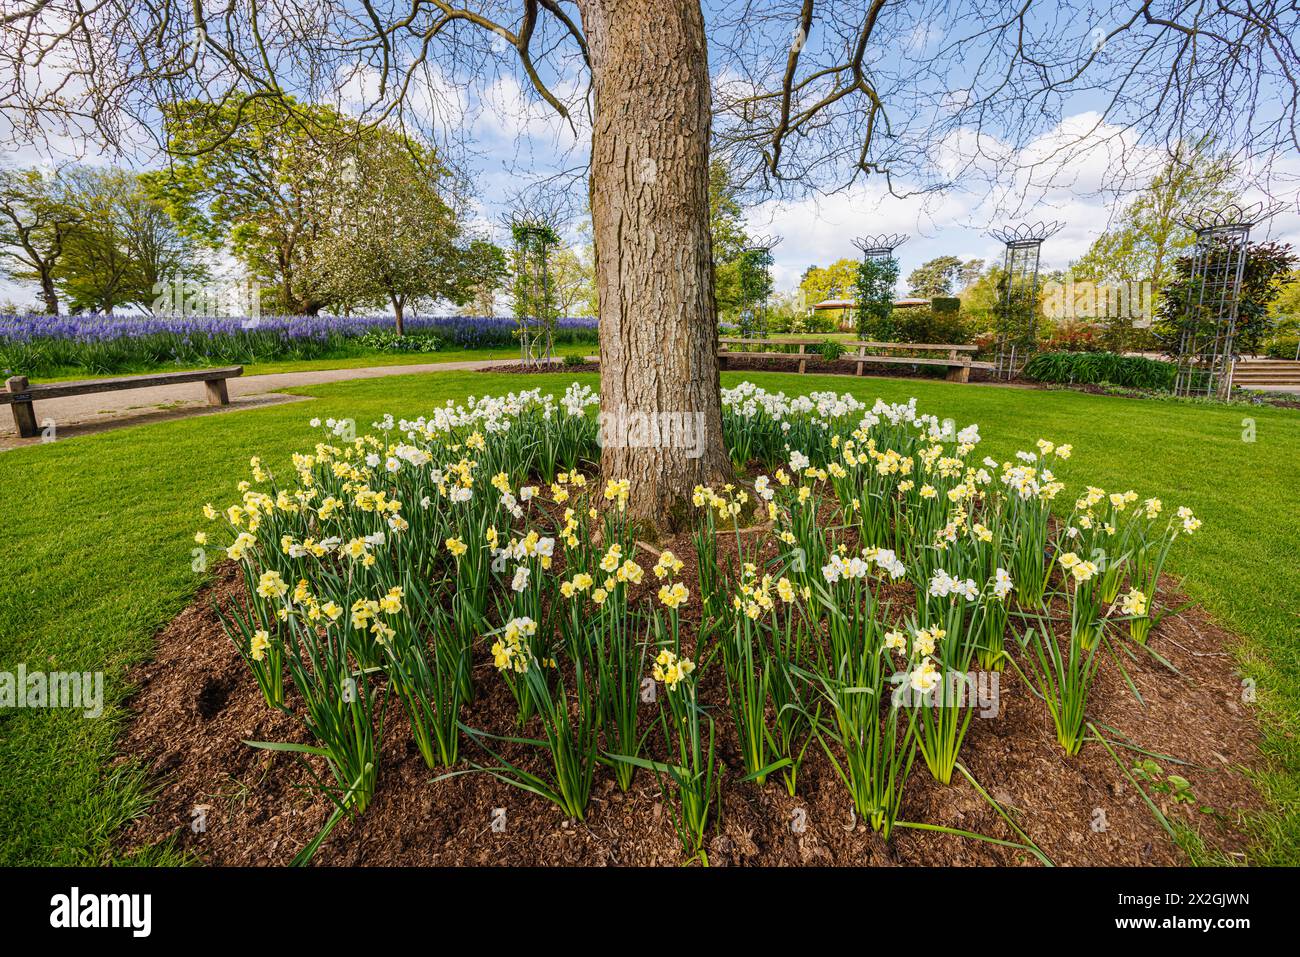 Narcissus „Yellow Cheerfulness“ und weiße „Cheerfulness“ blühen im Frühjahr rund um einen Baum, RHS Garden, Wisley, Surrey, Südosten Englands Stockfoto